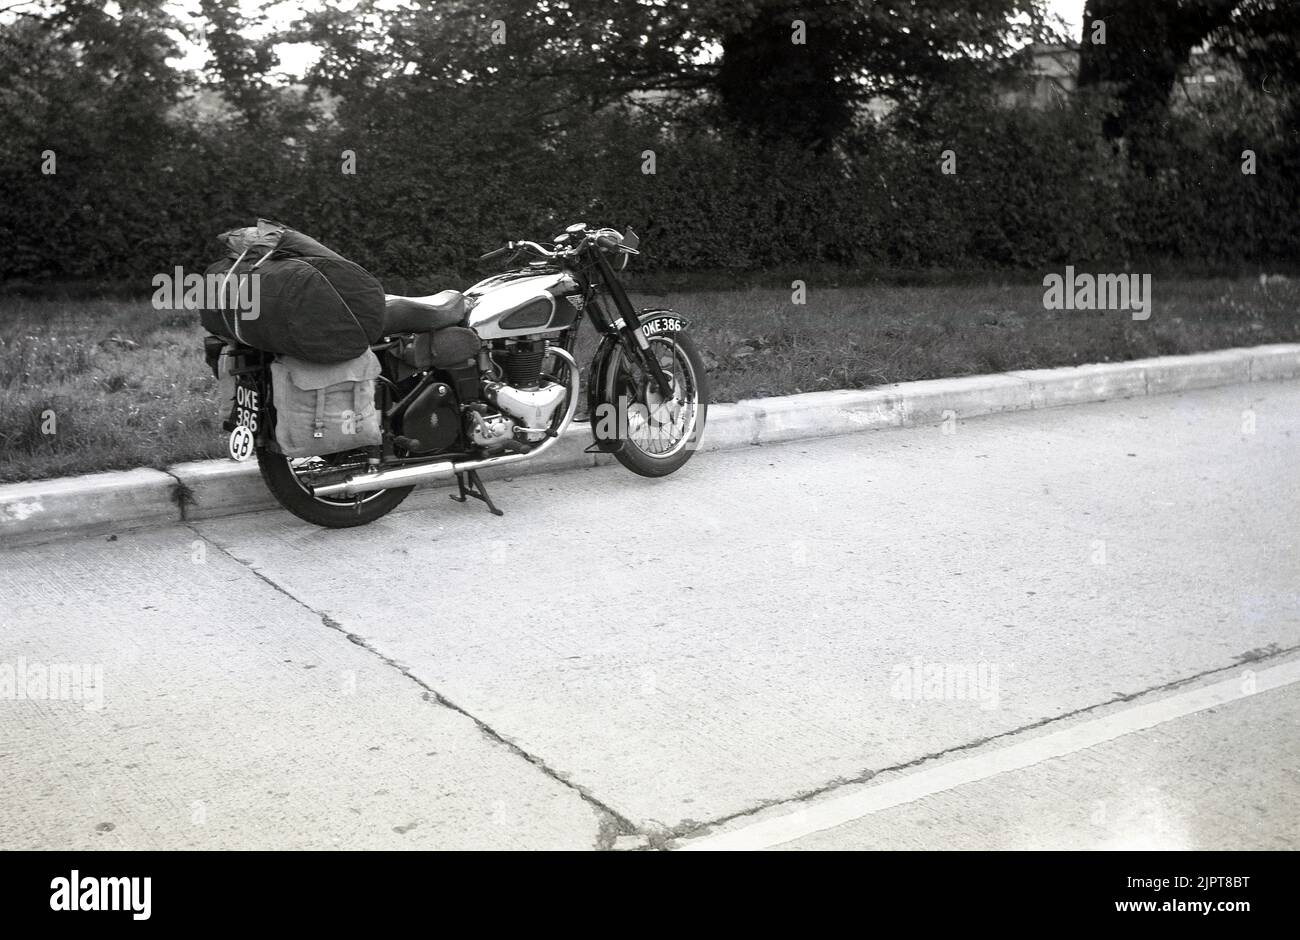 1950s, storico, parcheggiato su una strada, una moto BSA dell'epoca. Sul retro della moto, una custodia in stoffa impaccata sulle mutandine in tela pronta per una vacanza in giro per l'Europa. Foto Stock